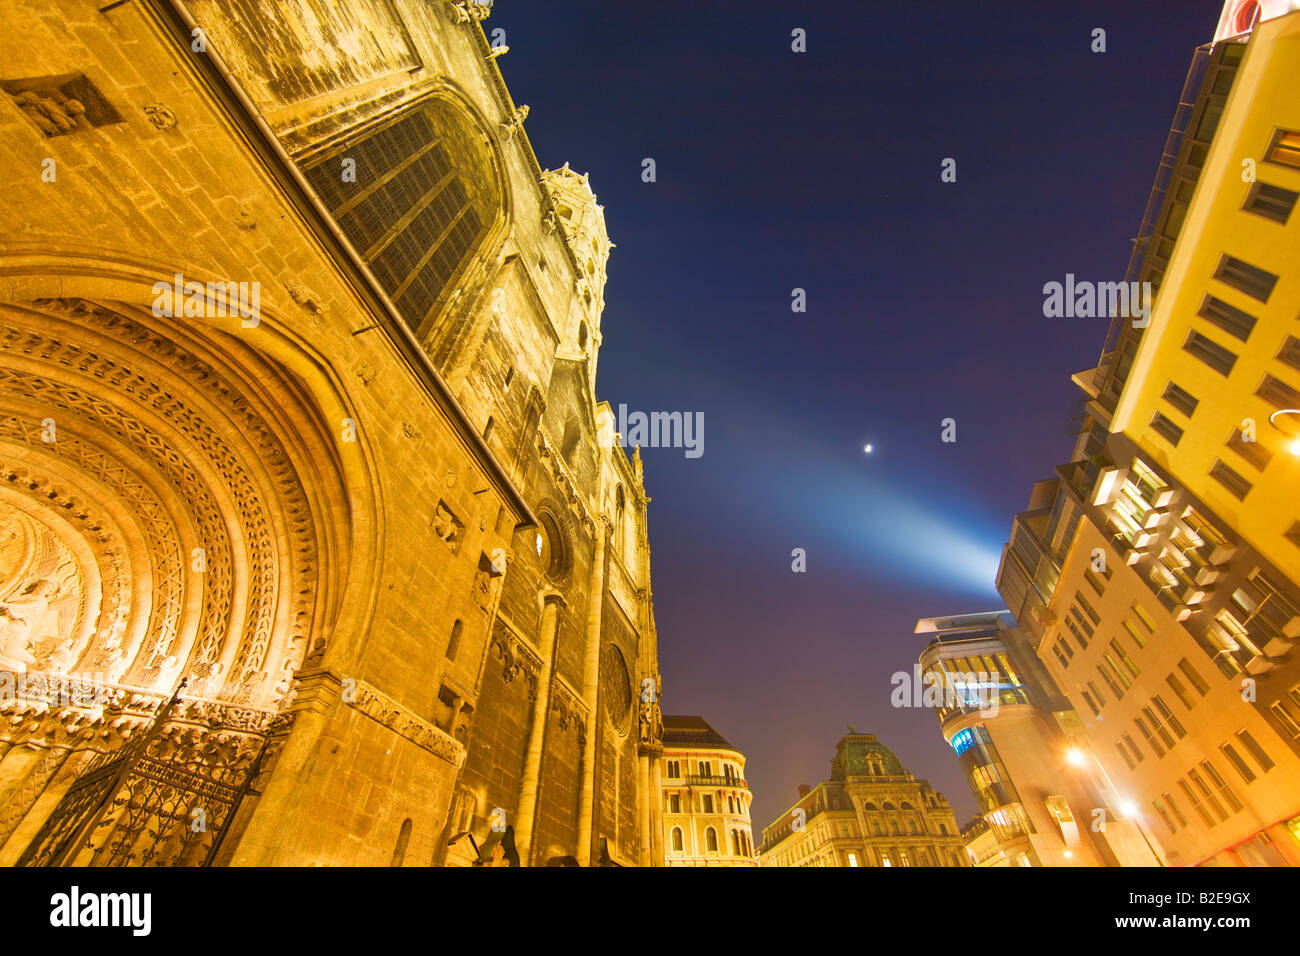 Buildings lit up at night, Stephansplatz, Vienna, Austria Stock Photo